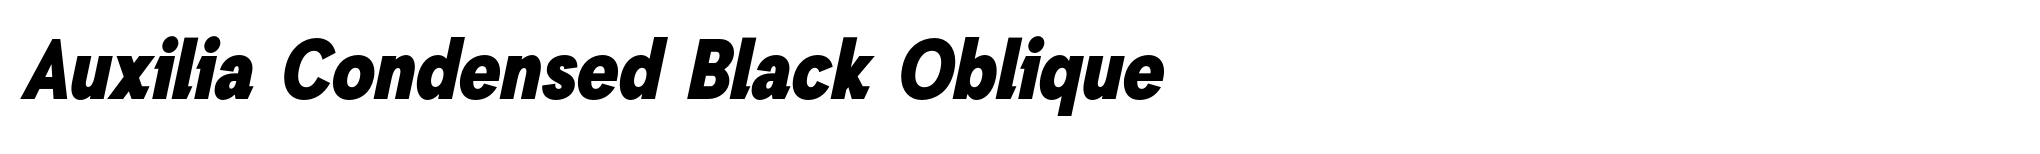 Auxilia Condensed Black Oblique image